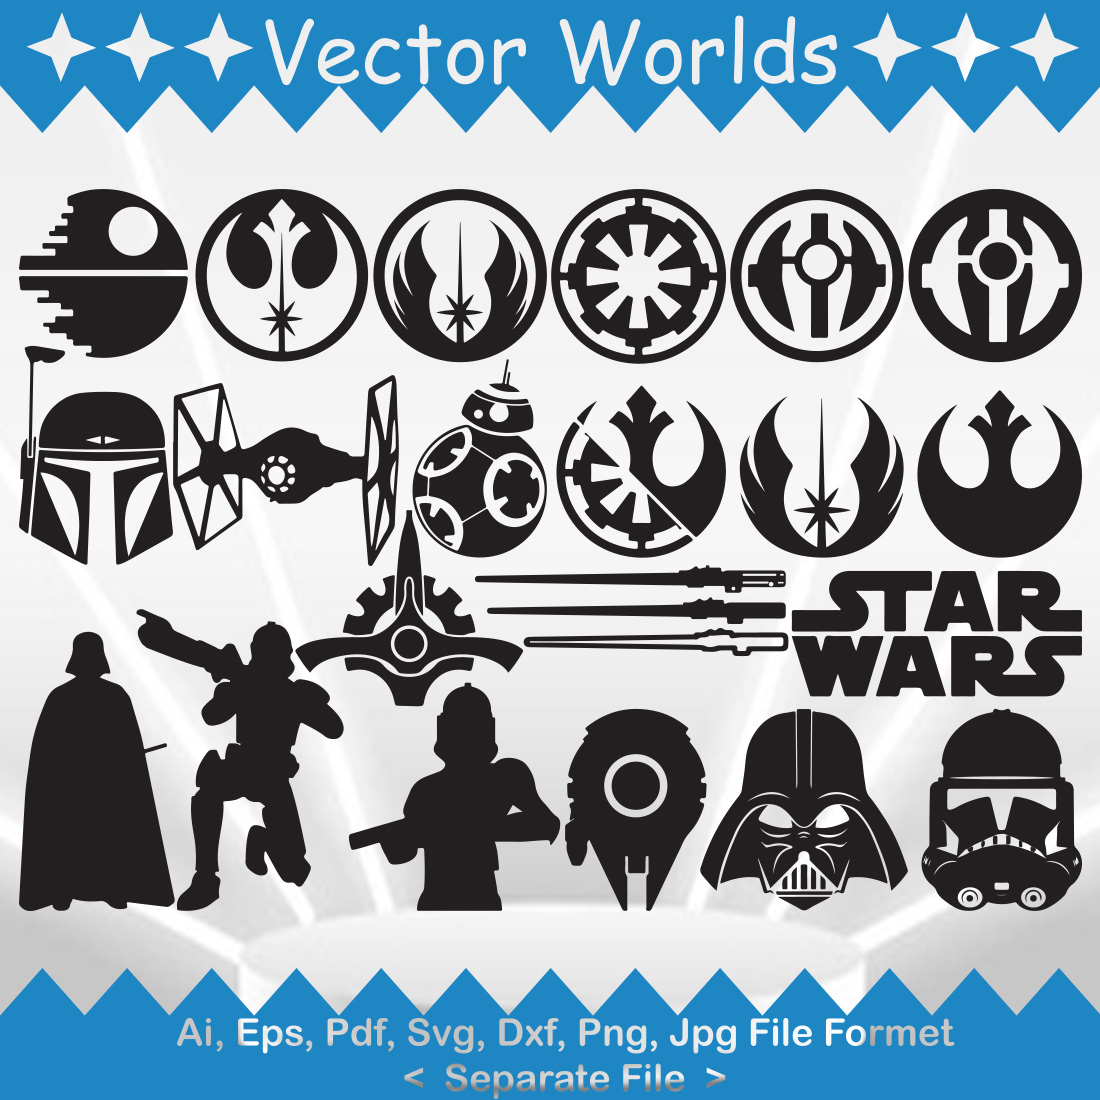 Star Wars SVG Vector Design preview image.